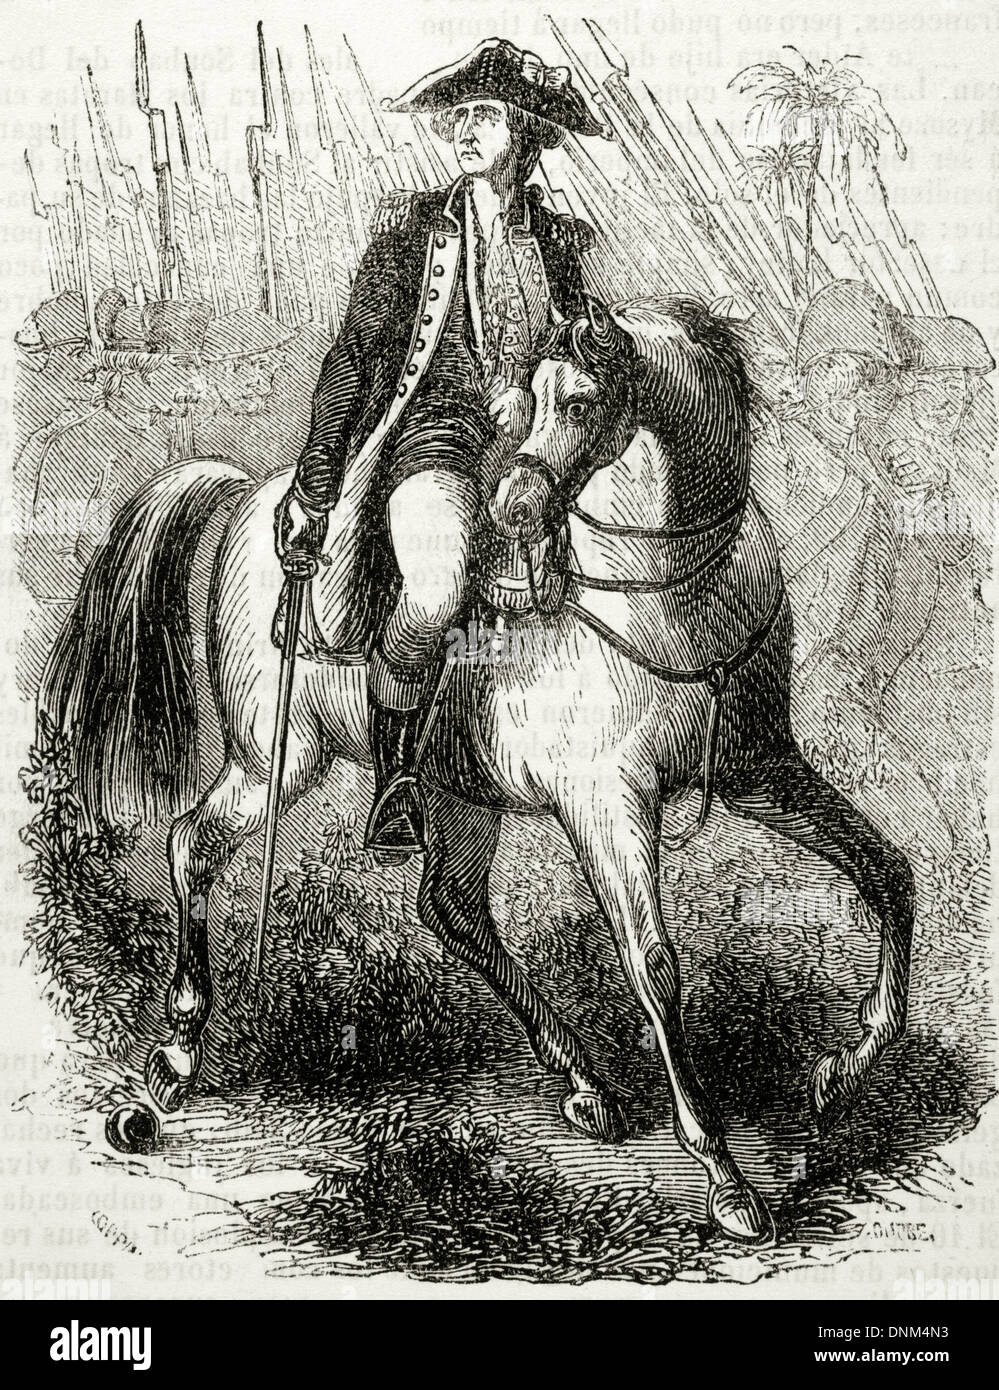 Il marchese di La Fayette (1757-1834). Il francese militare e politico. Incisione di E. Coppin. Biblioteca universale, 1851. Foto Stock